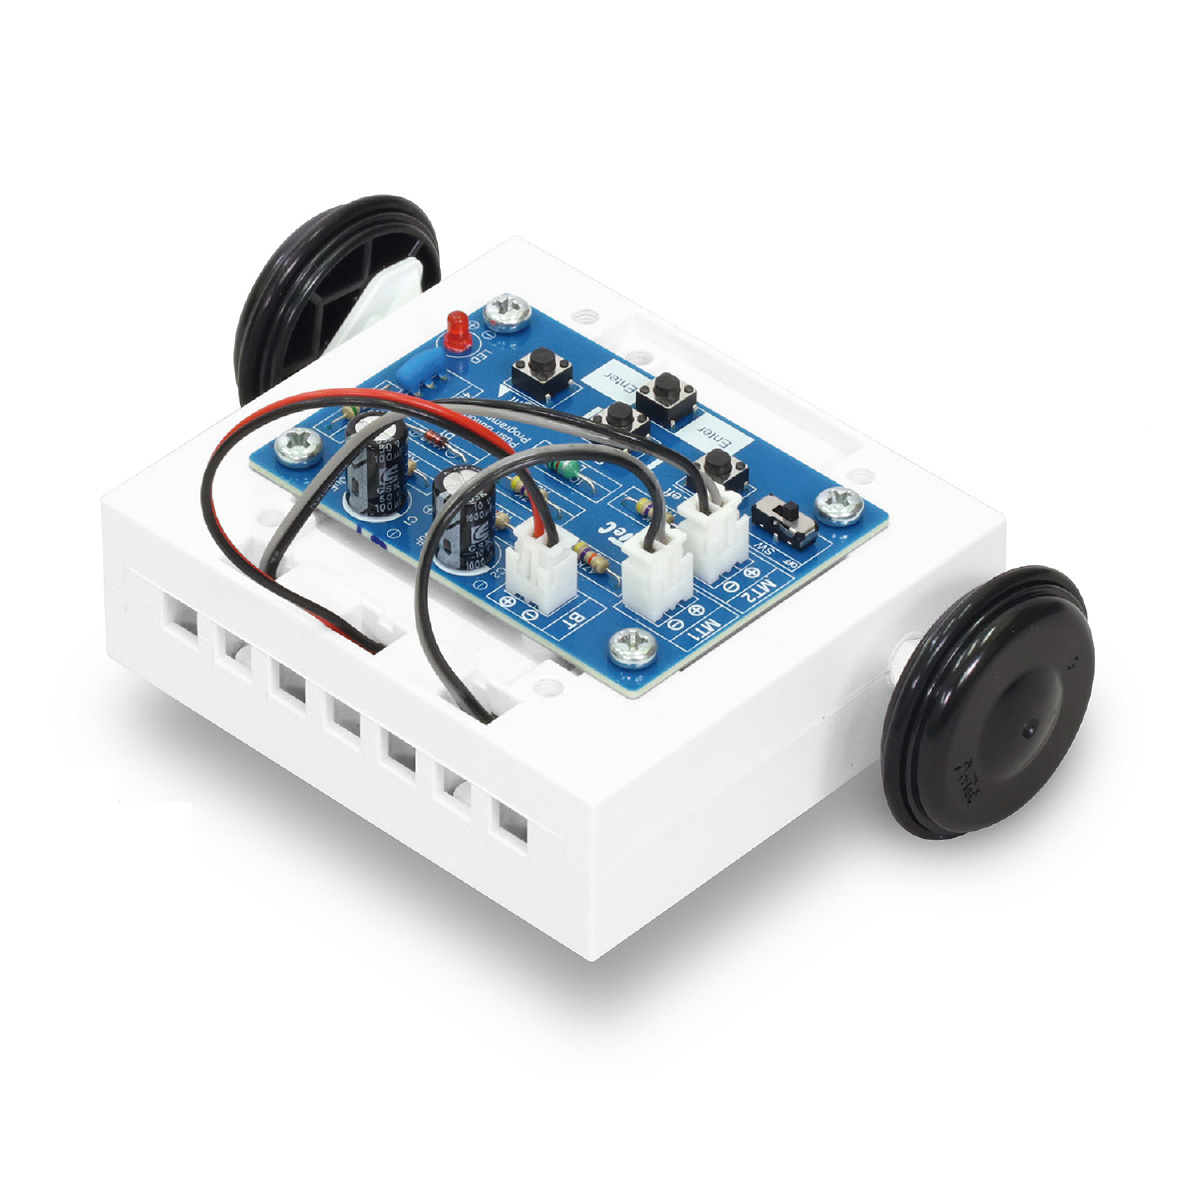 楽天市場 モーター 工作 キット 簡単ボタン制御ロボ 基板組立済 技術 ロボット パーツ 自由研究 中学生 ルーペスタジオ